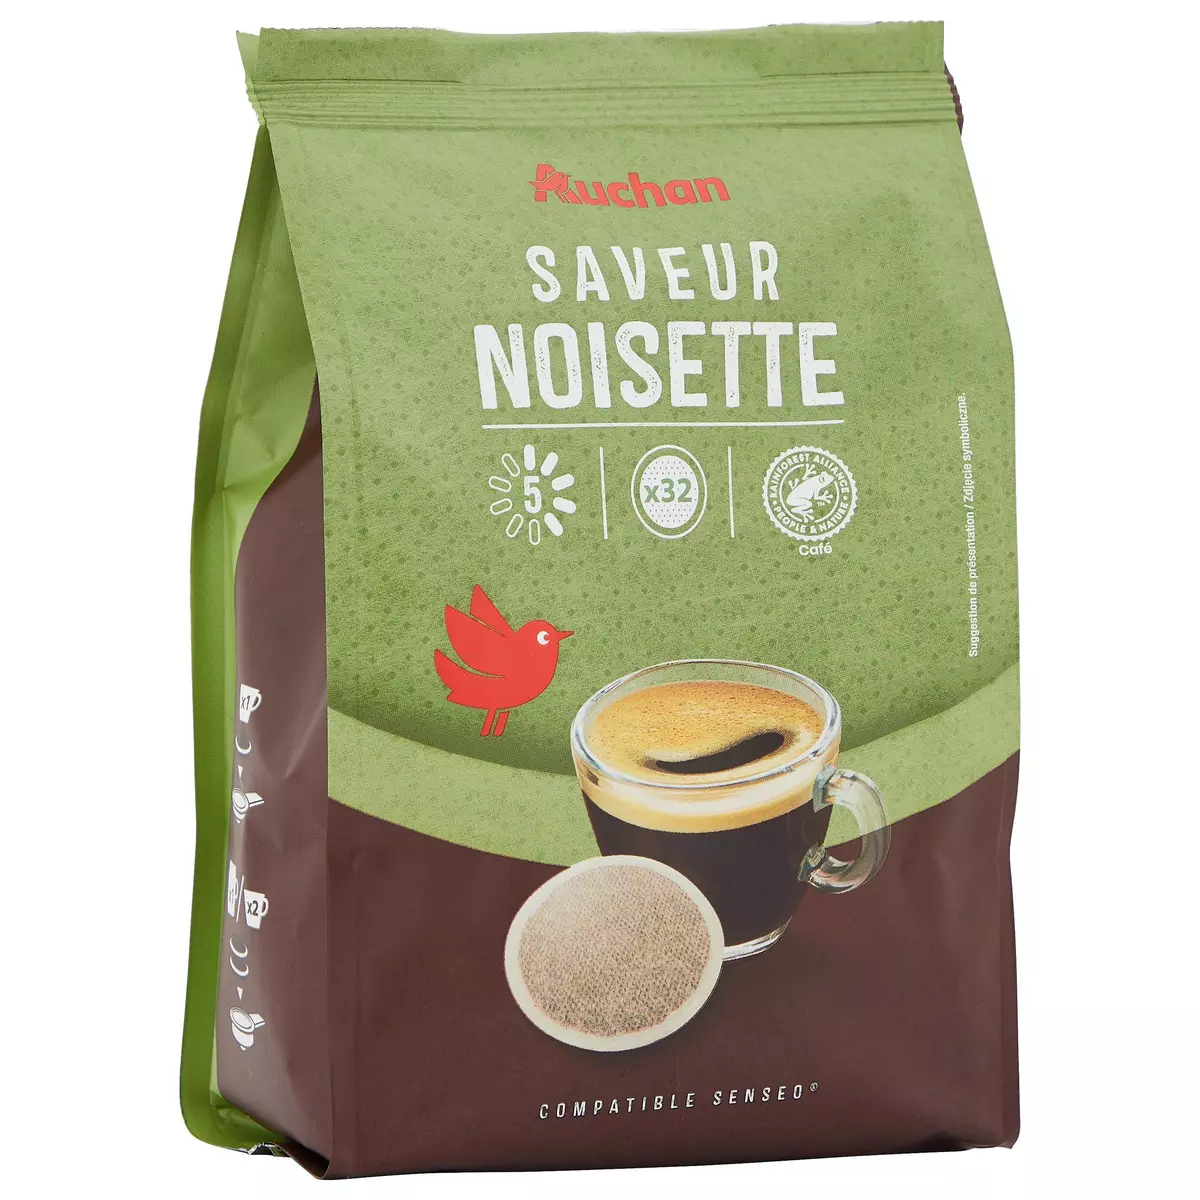 AUCHAN Dosettes de café saveur noisette intensité 5 compatibles Senseo 32 dosettes 224g